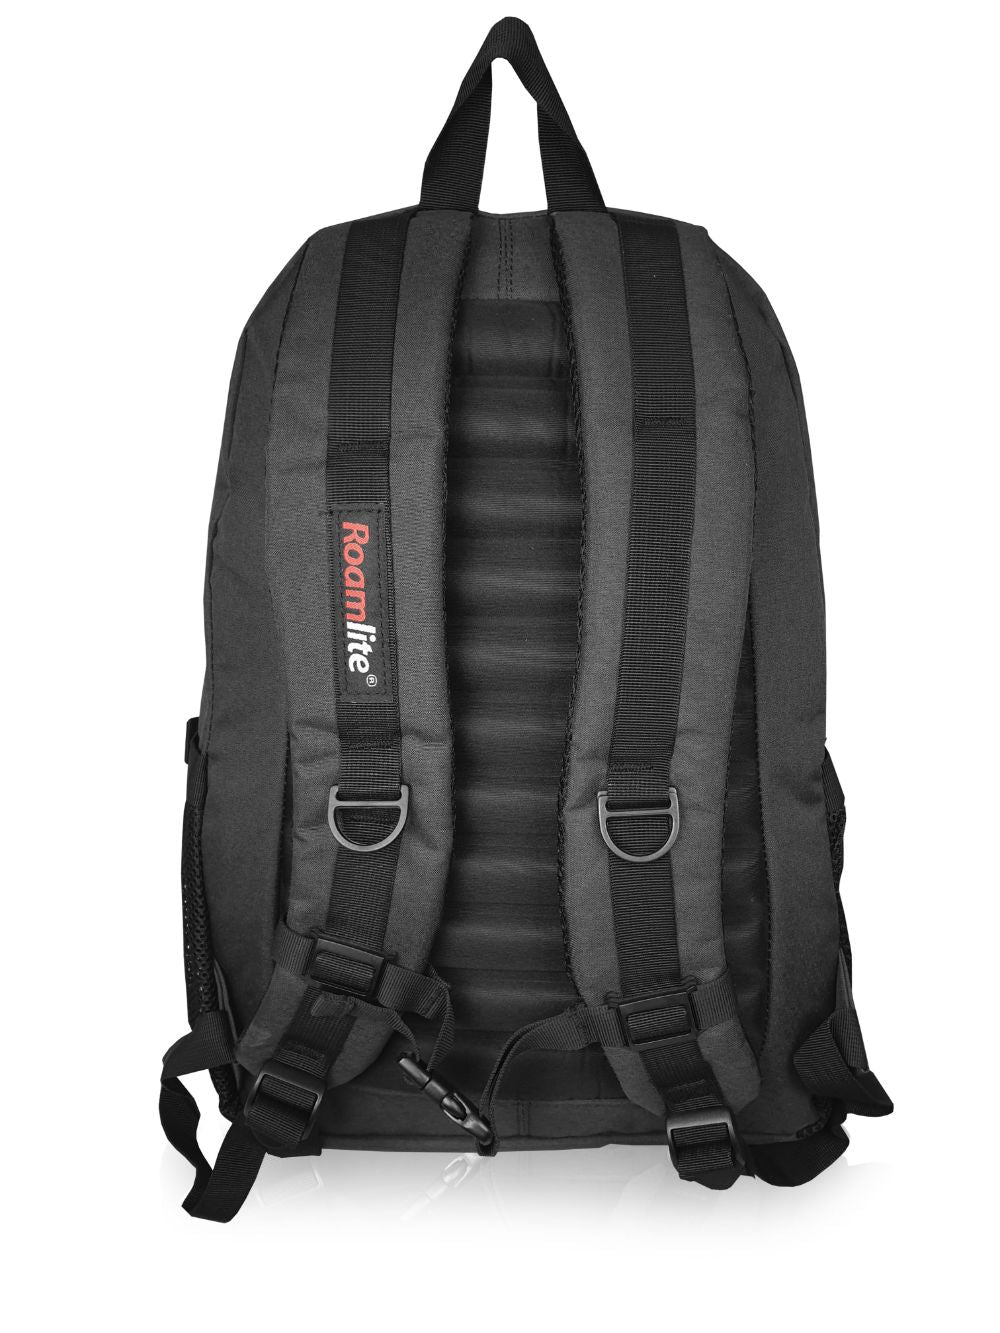 Roamlite Work Laptop Backpack black rl44 back 2